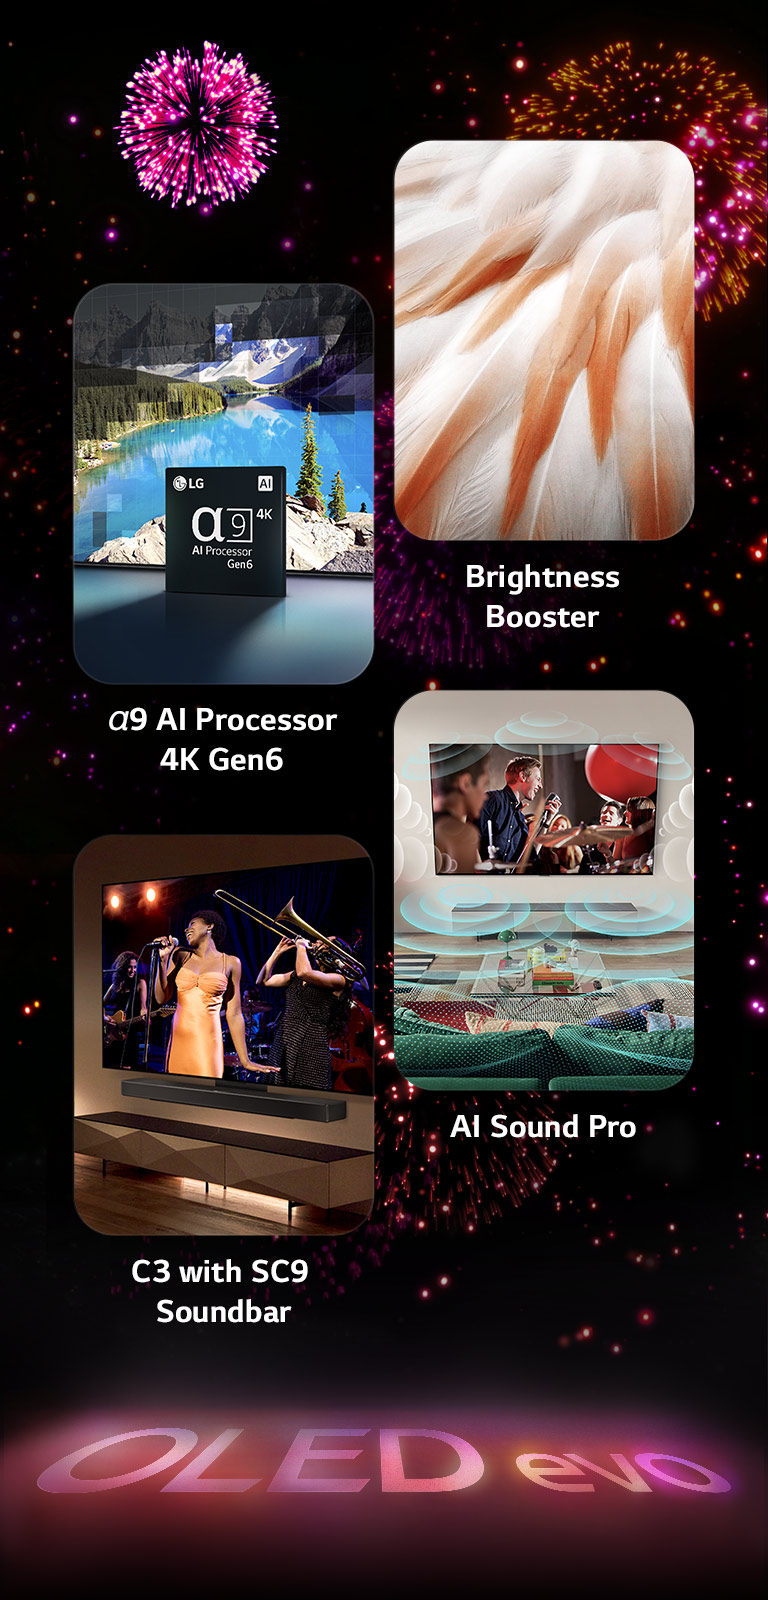 Hình ảnh trình bày các tính năng chính của LG OLED evo C3 trên nền đen với màn bắn pháo hoa màu hồng và tím. Hình ảnh phản chiếu màu hồng từ màn bắn pháo hoa trên mặt đất cho thấy dòng chữ